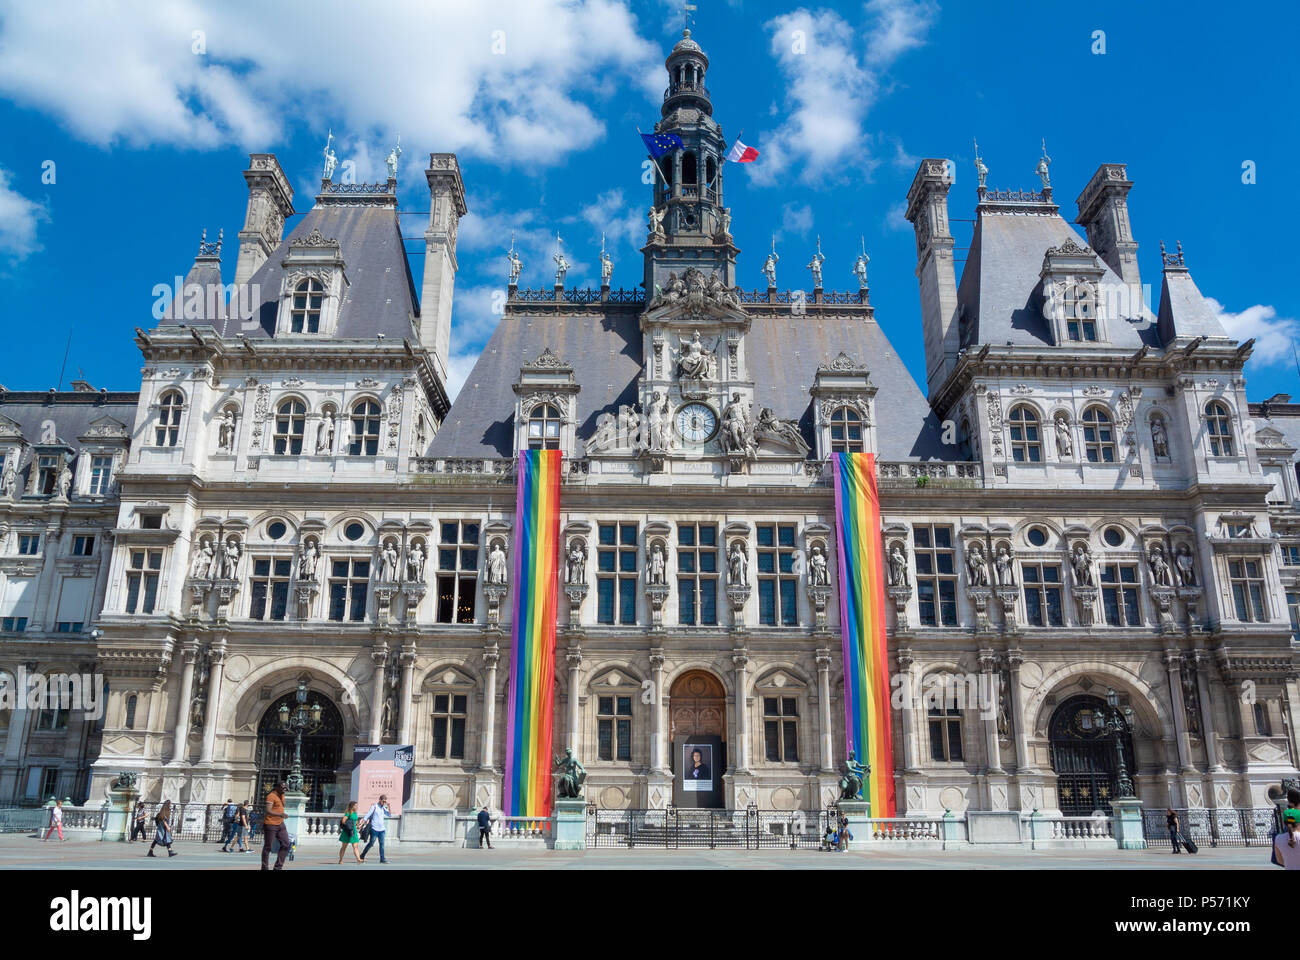 L'hôtel de ville, Hôtel de Ville avec des drapeaux arc-en-ciel pour la célébration de la gay pride 2018, Paris, France, Europe Banque D'Images